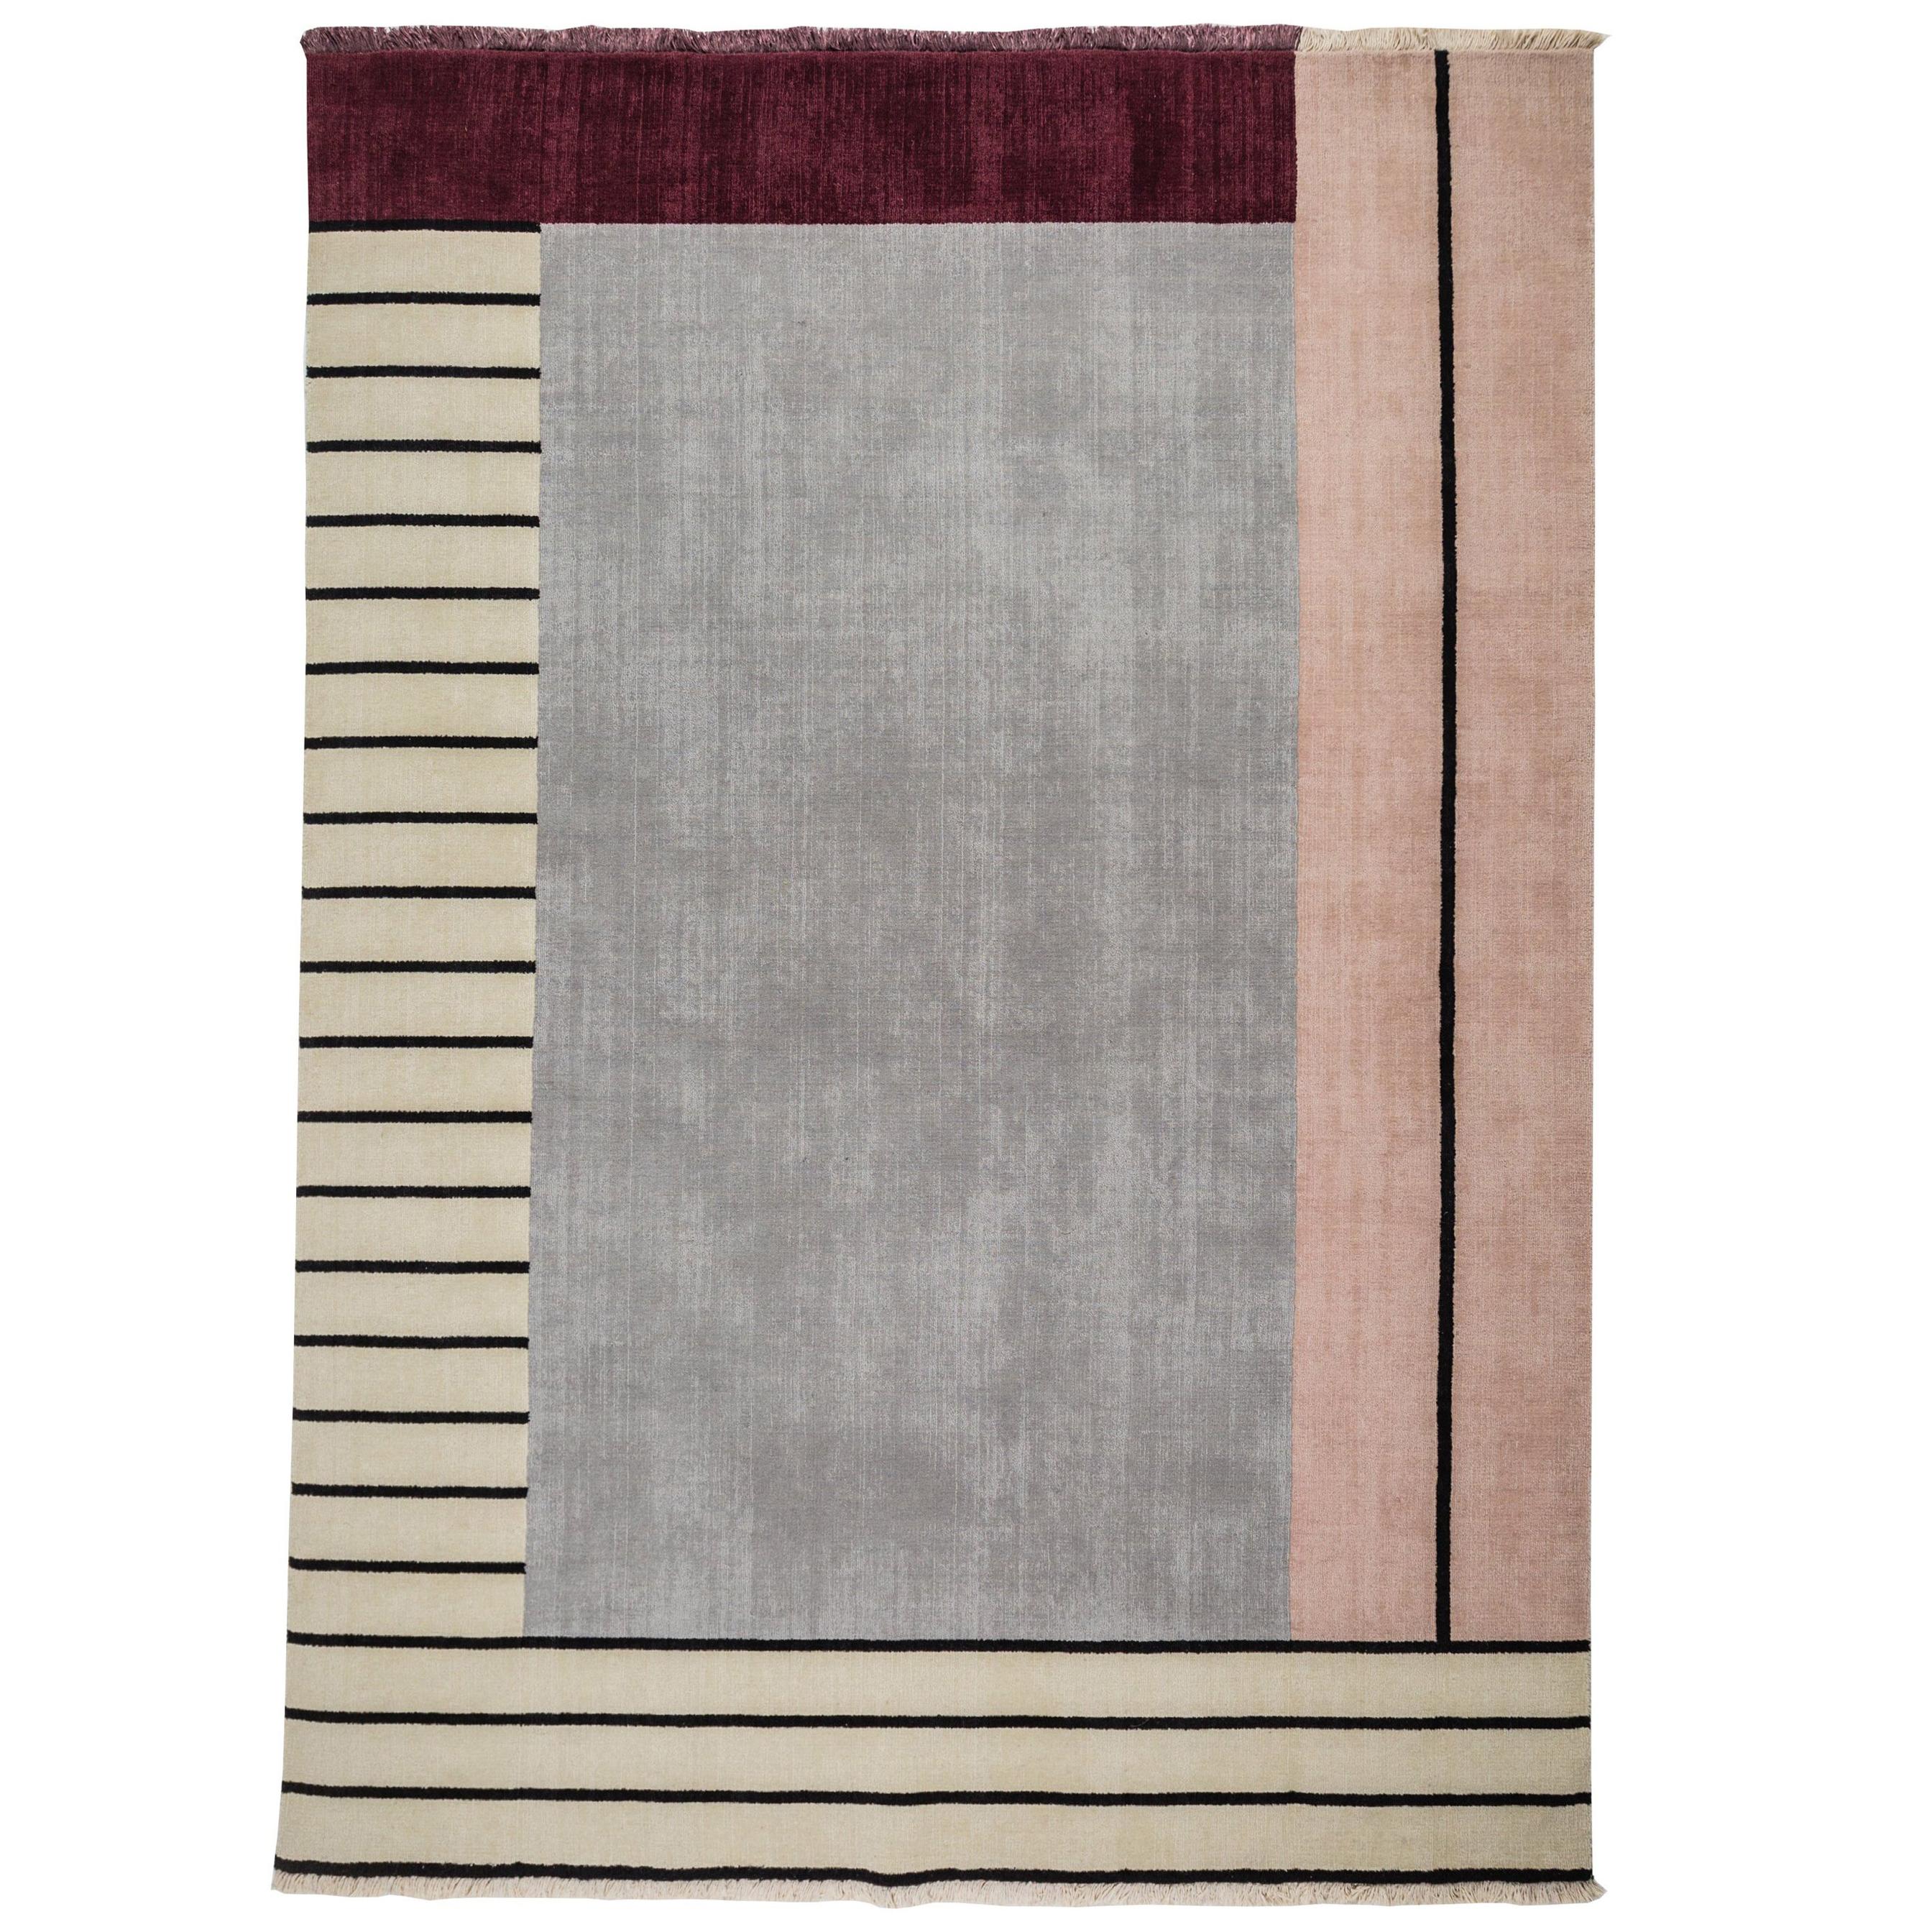  Rug Walkway Pink - Geometric Grey Maroon Beige Wool with Lines by Carpets CC